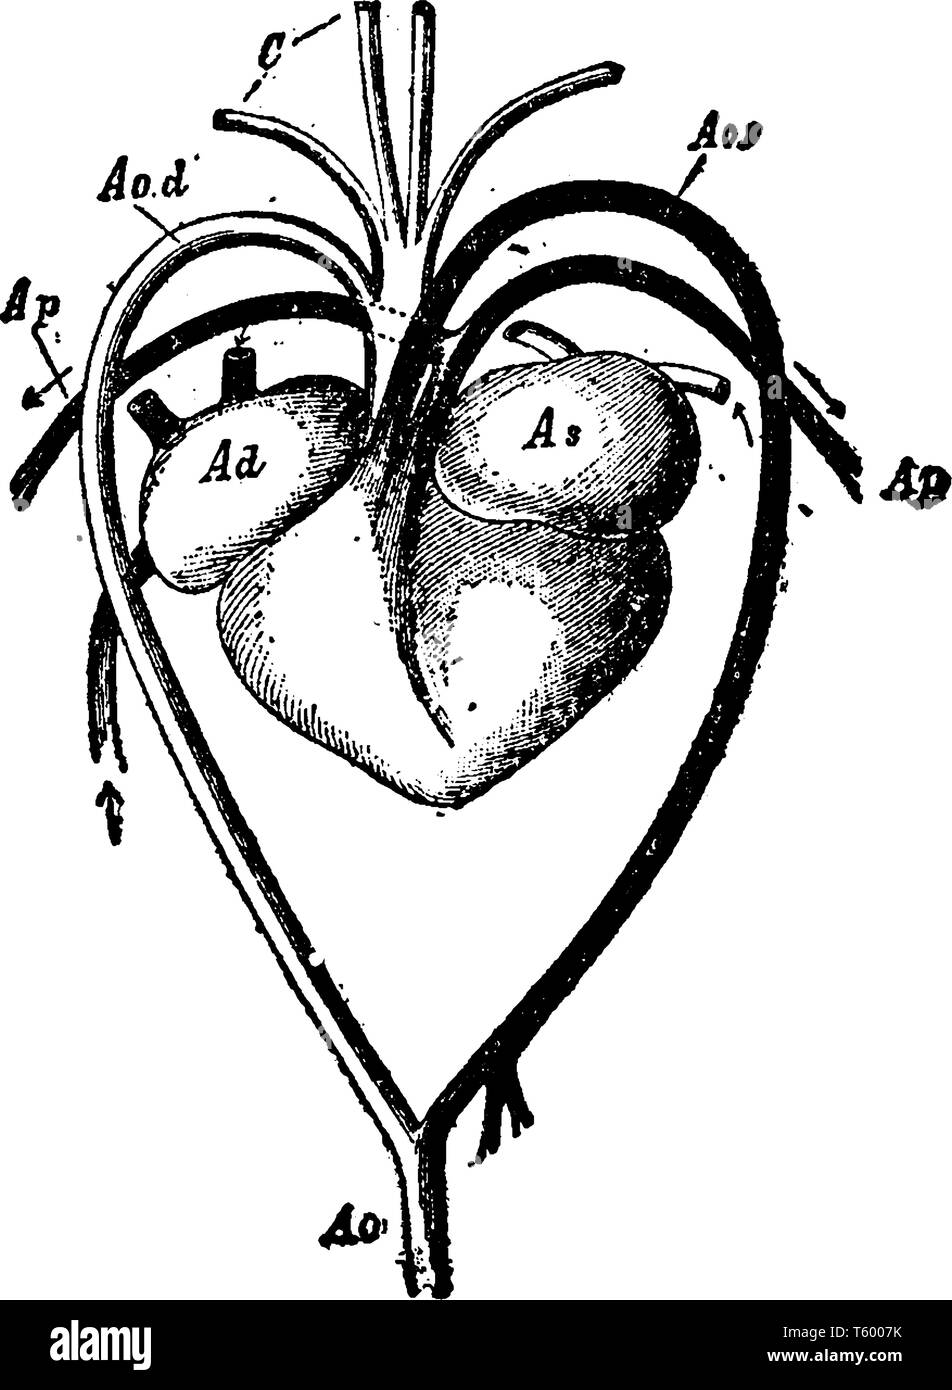 Cœur et les vaisseaux sanguins d'une tortue a arc de gauche de l'aorte et de l'aorte dorsale, vintage dessin ou gravure illustration. Illustration de Vecteur